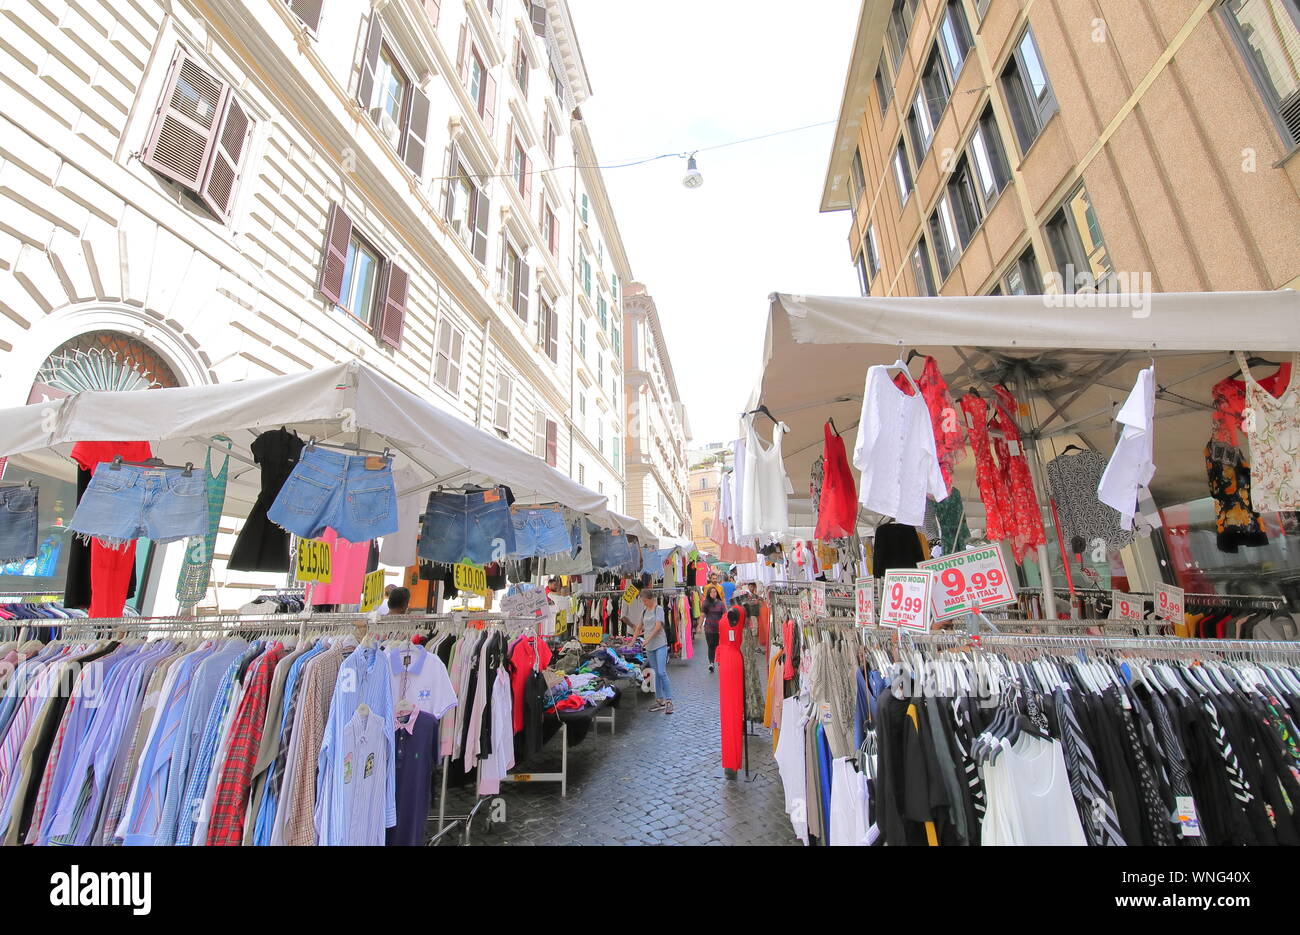 La gente visita el mercado callejero de ropa local Roma Italia Foto de stock